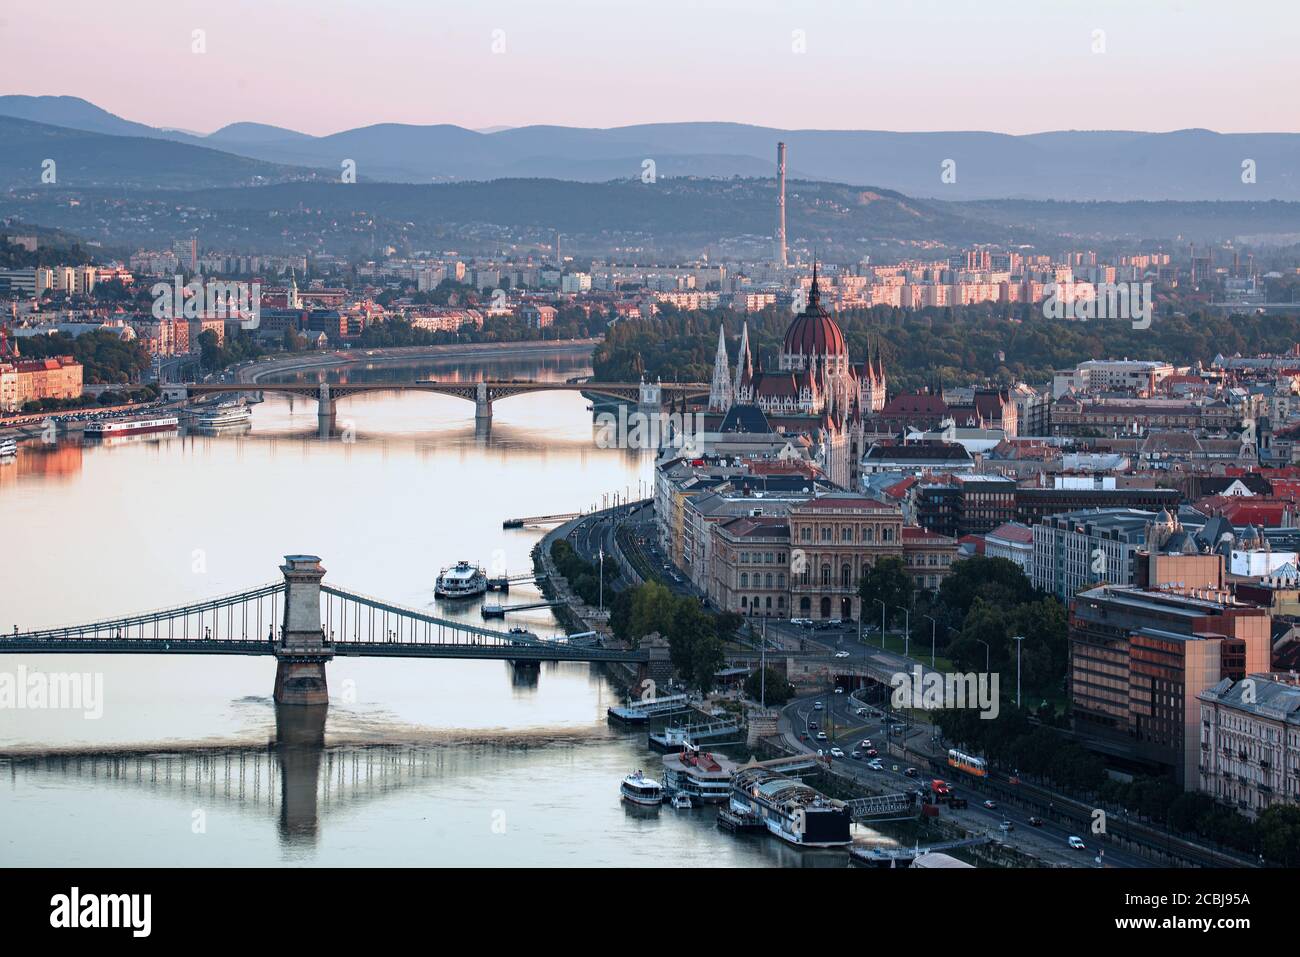 Budapester Stadtbild mit Donau und Birkenzägen. Ungarische wissenschaftliche Akademie Gebäude und Kettenbrücke im Vordergrund. Margaretenbrücke und isla Stockfoto